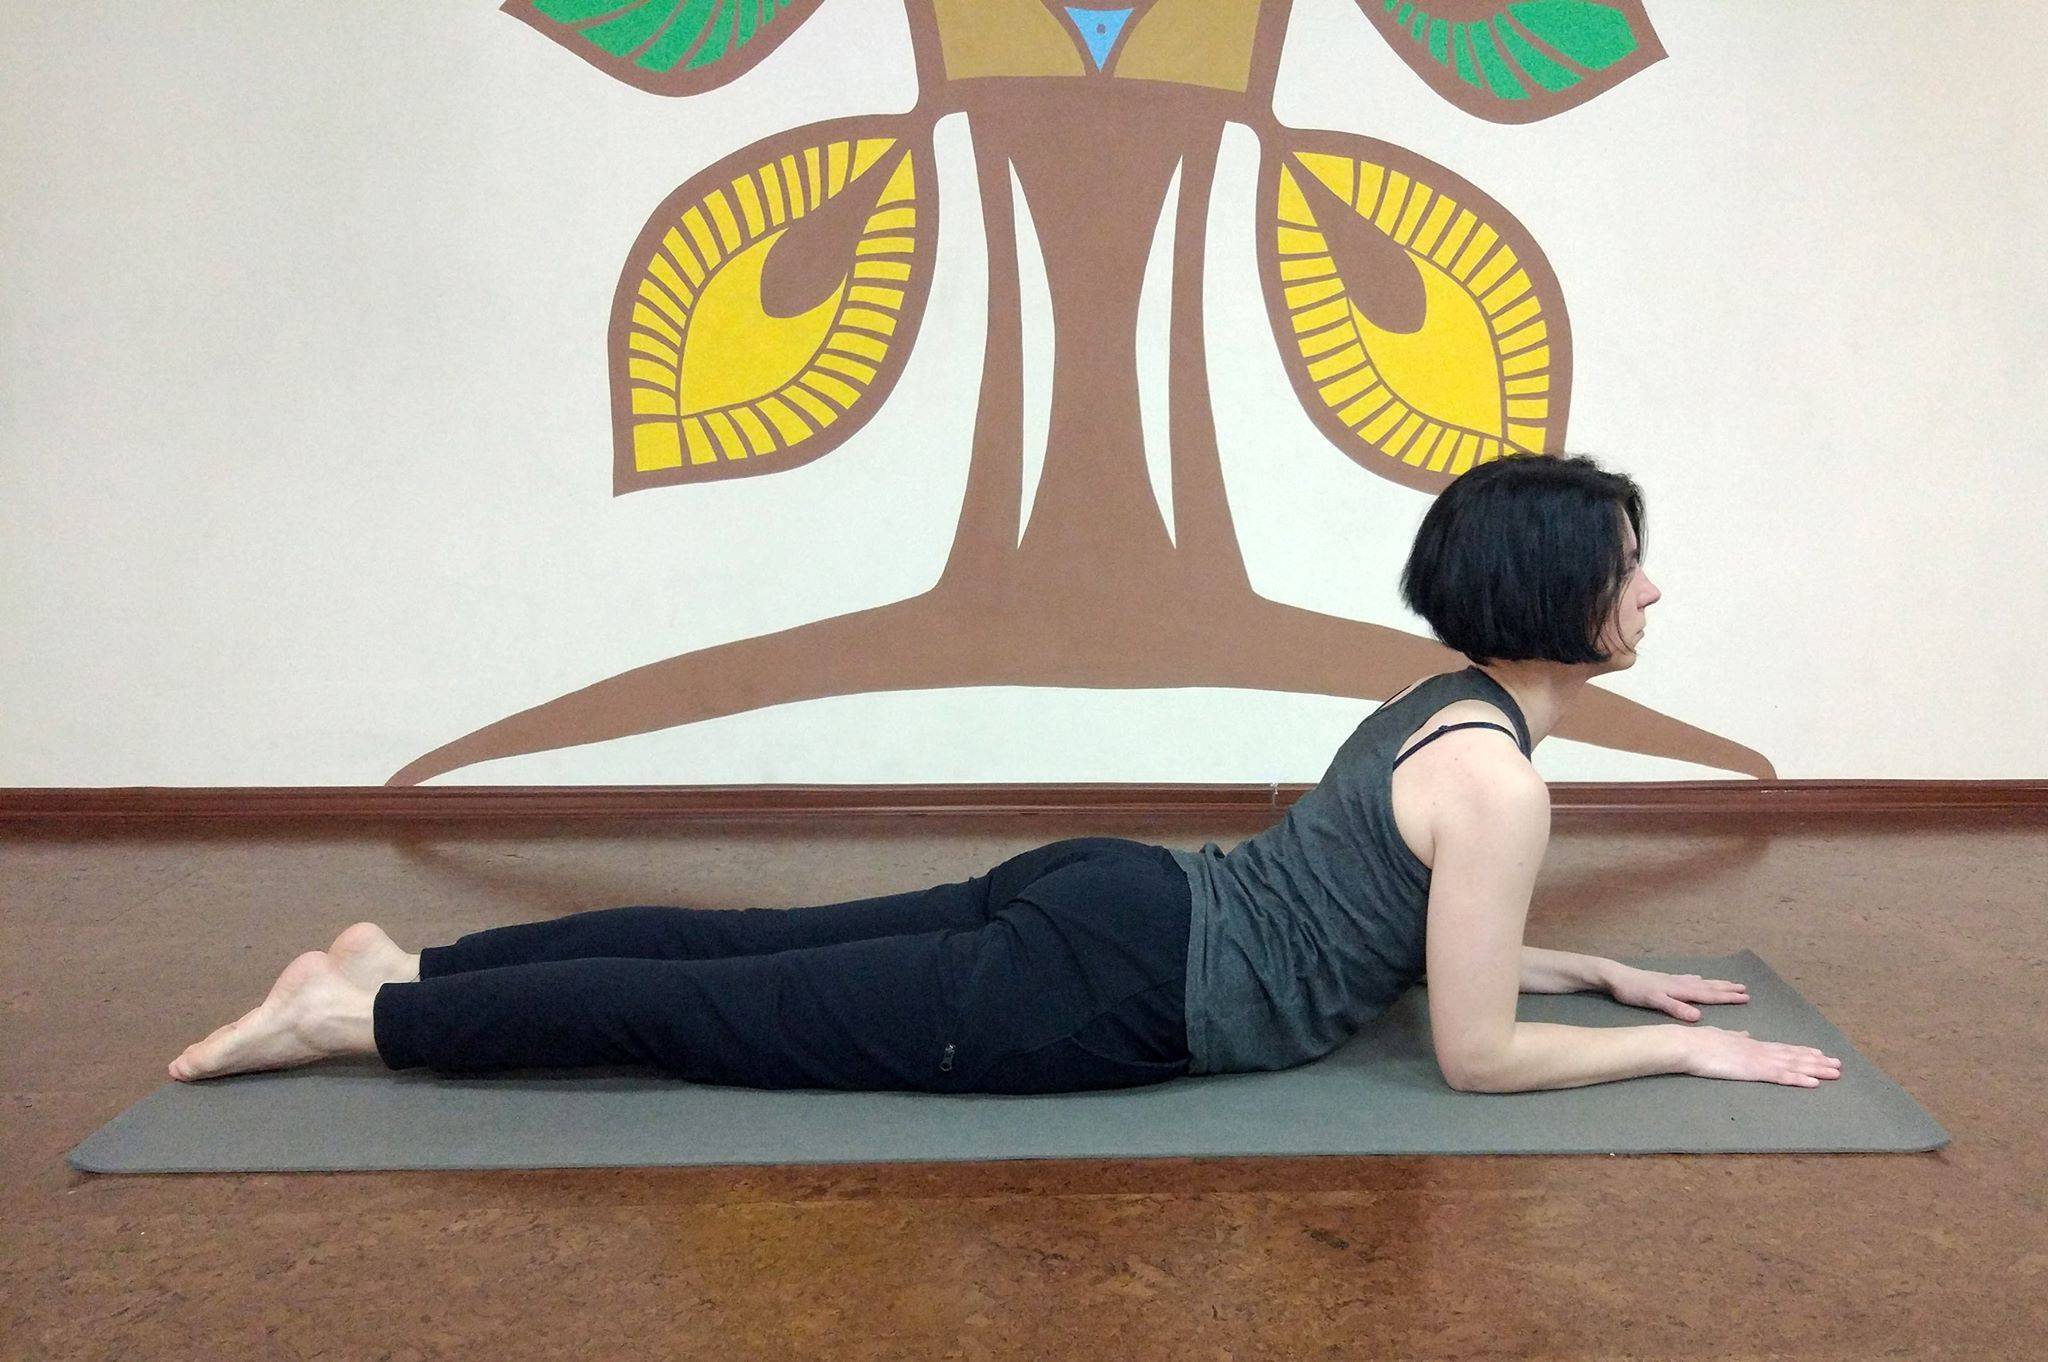 9 асан йоги для исправления осанки от сутулости, выпрямления позвоночника и спины